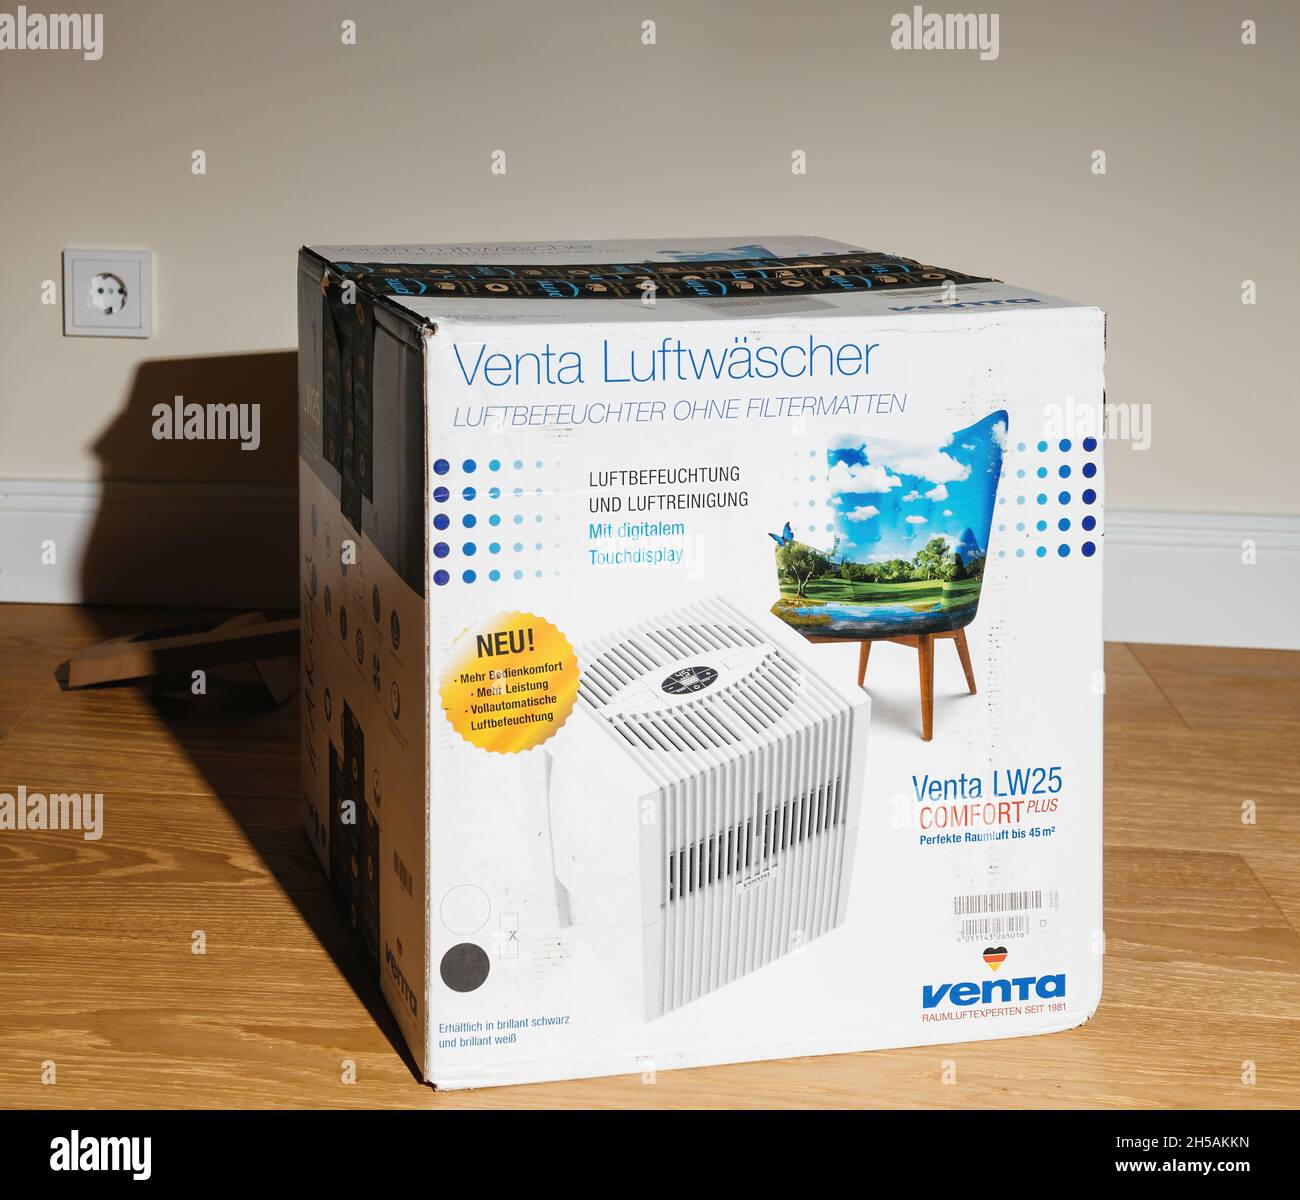 Karton Venta Airwasher Luftbefeuchter ohne Filterkissen Modell LW25 comfort  plus mit Display - neues Paket vor dem Auspacken im Wohnzimmer  Stockfotografie - Alamy